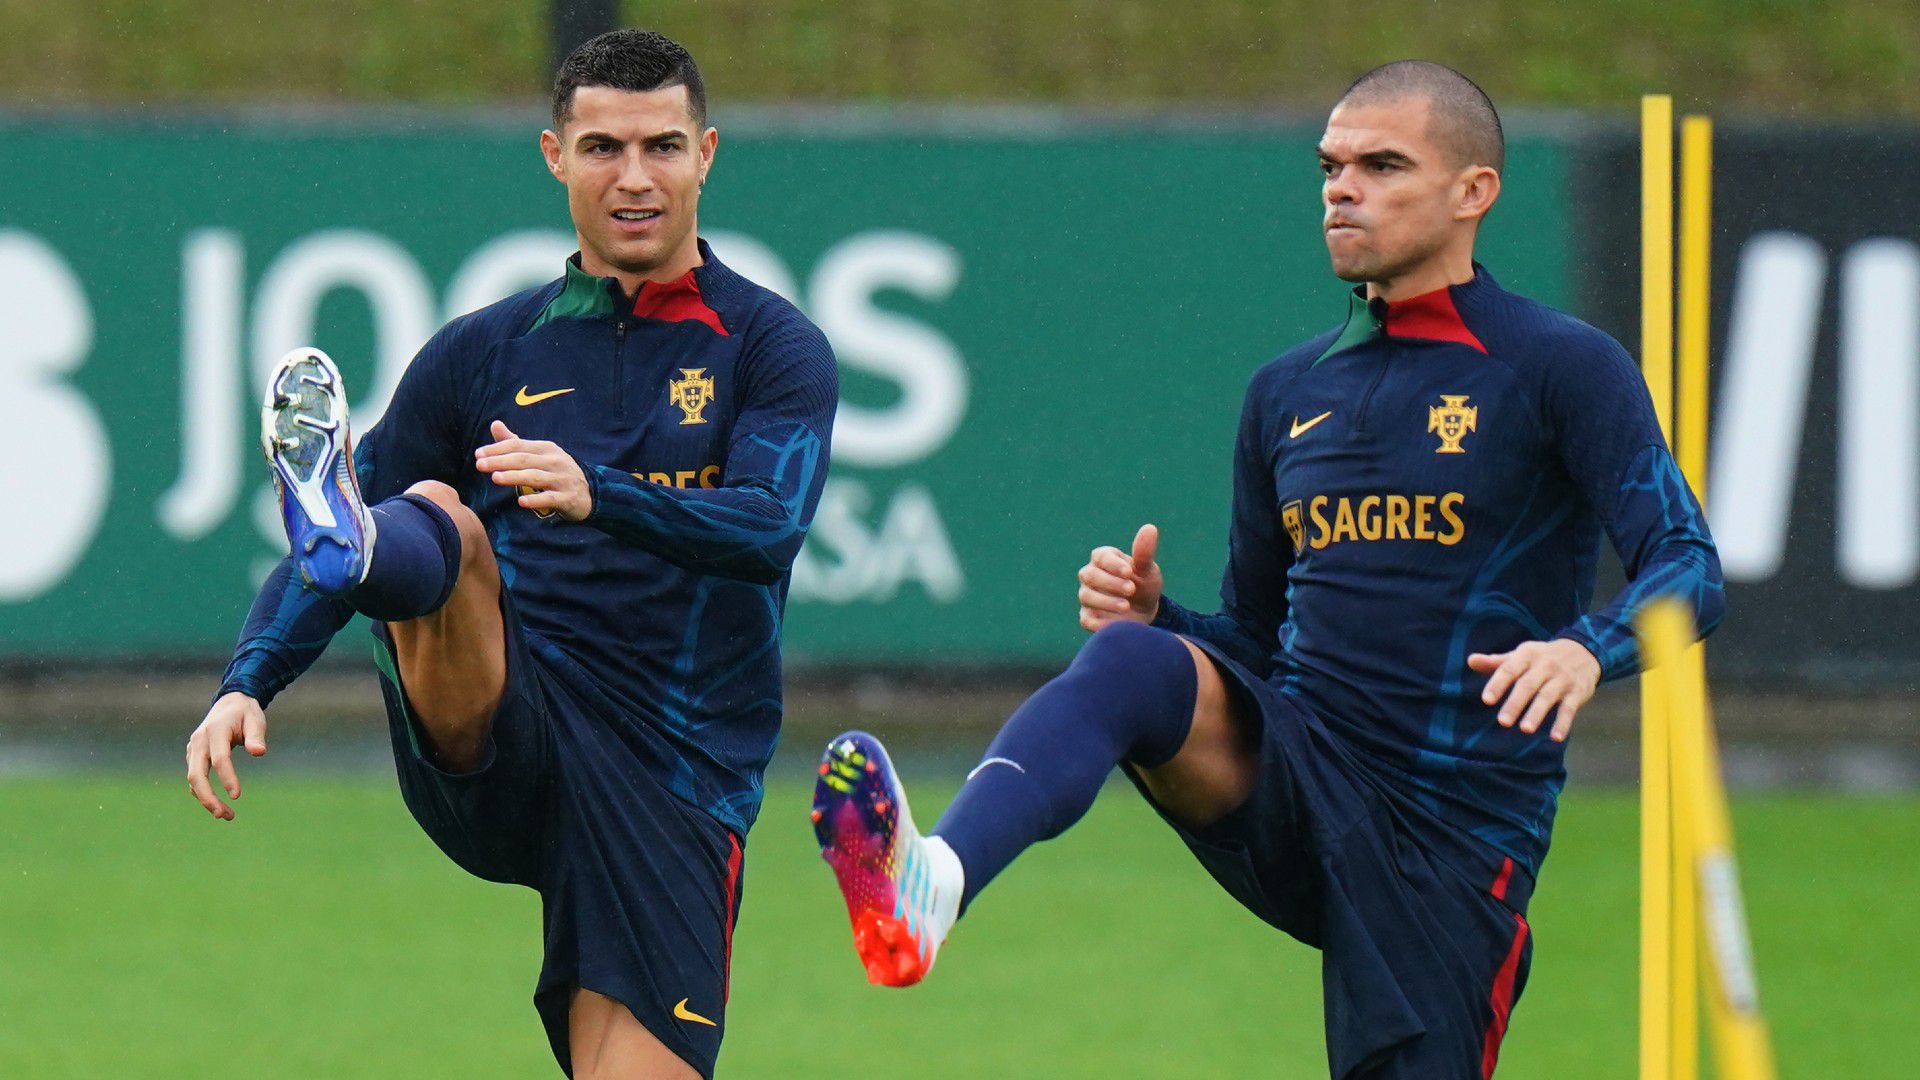 C. Ronaldo és a Suárez, Cavani duó is az utolsó nagy dobására készül